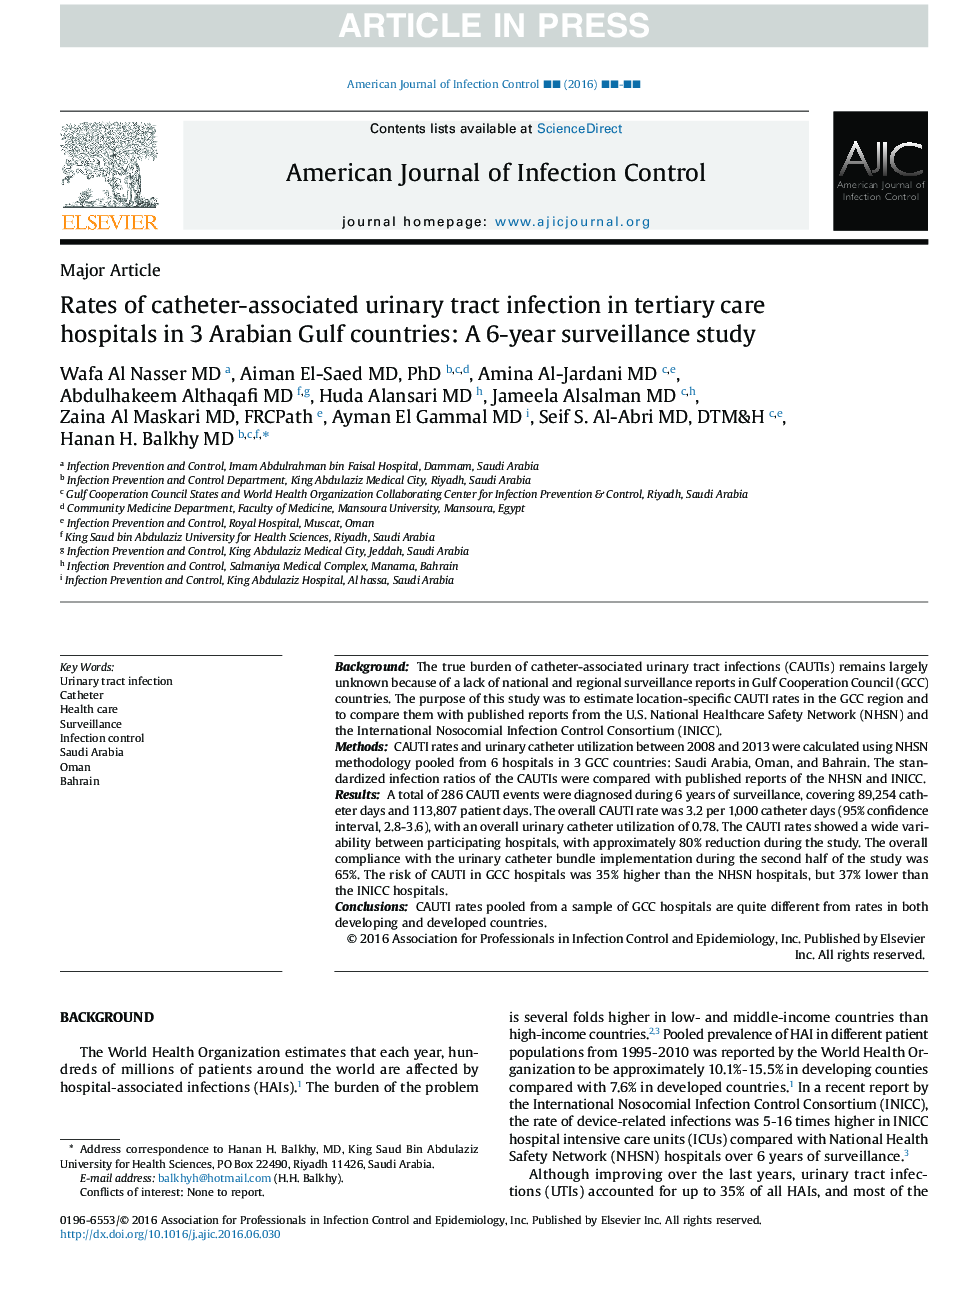 نرخ عفونت ادراری مرتبط با کاتتر در بیمارستان های مراقبت های عالی در سه کشور کشورهای خلیج عربی: یک مطالعه 6 ساله نظارت 